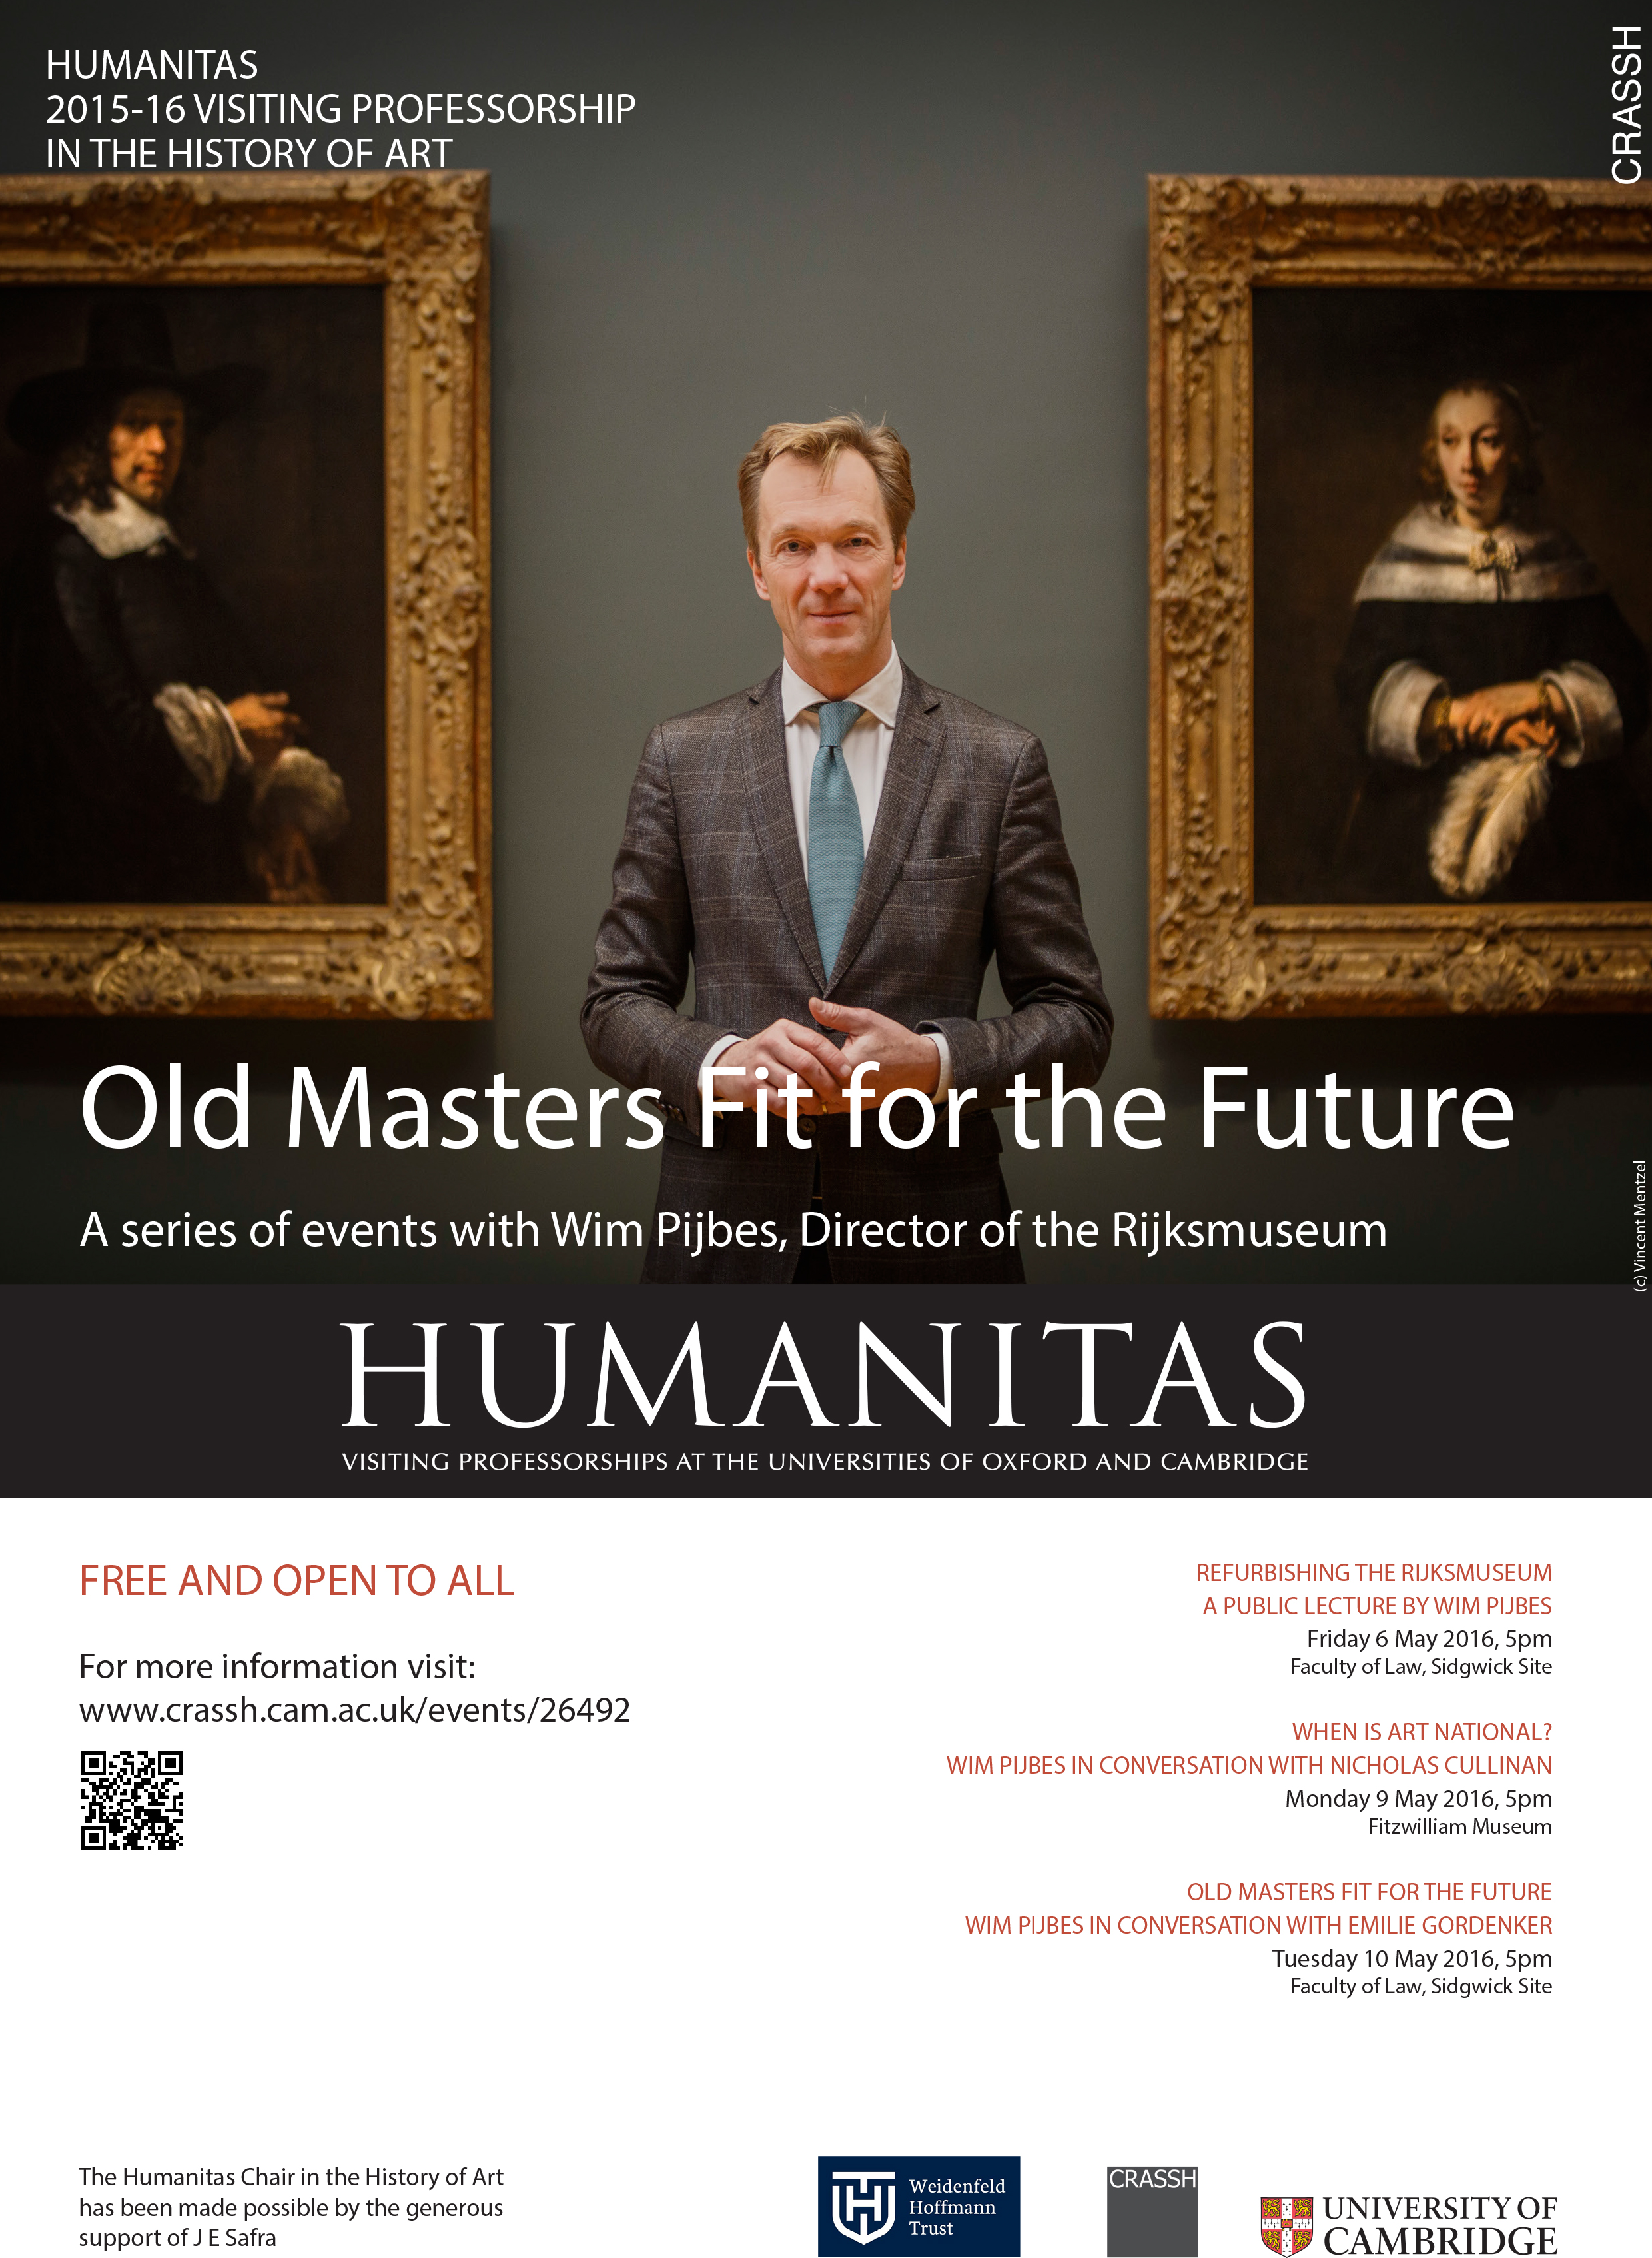 Humanitas Professor 2016 Poster